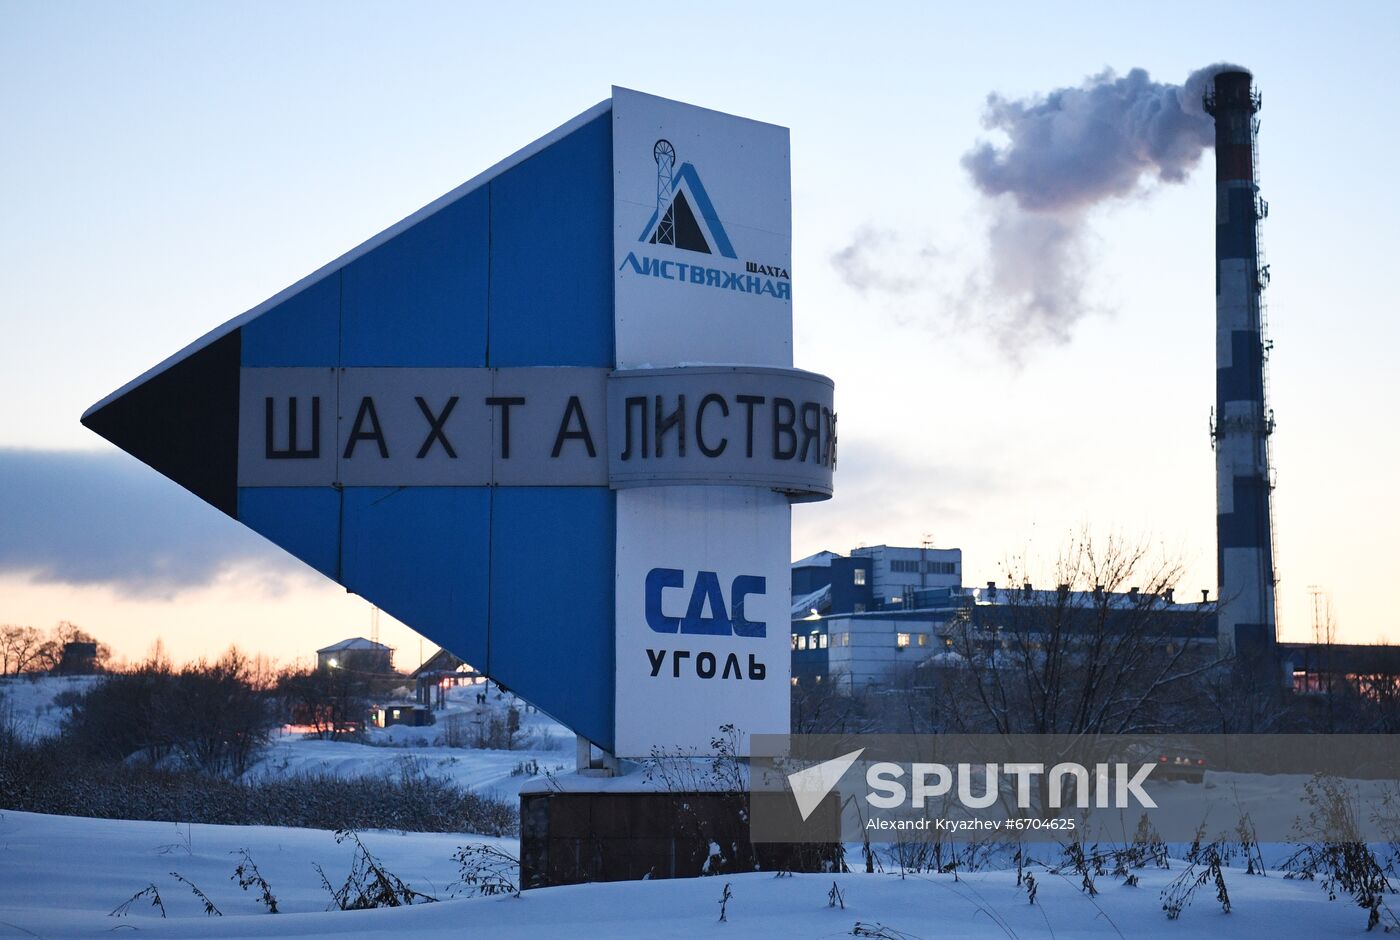 Russia Coal Mine Accident Rescue Operation